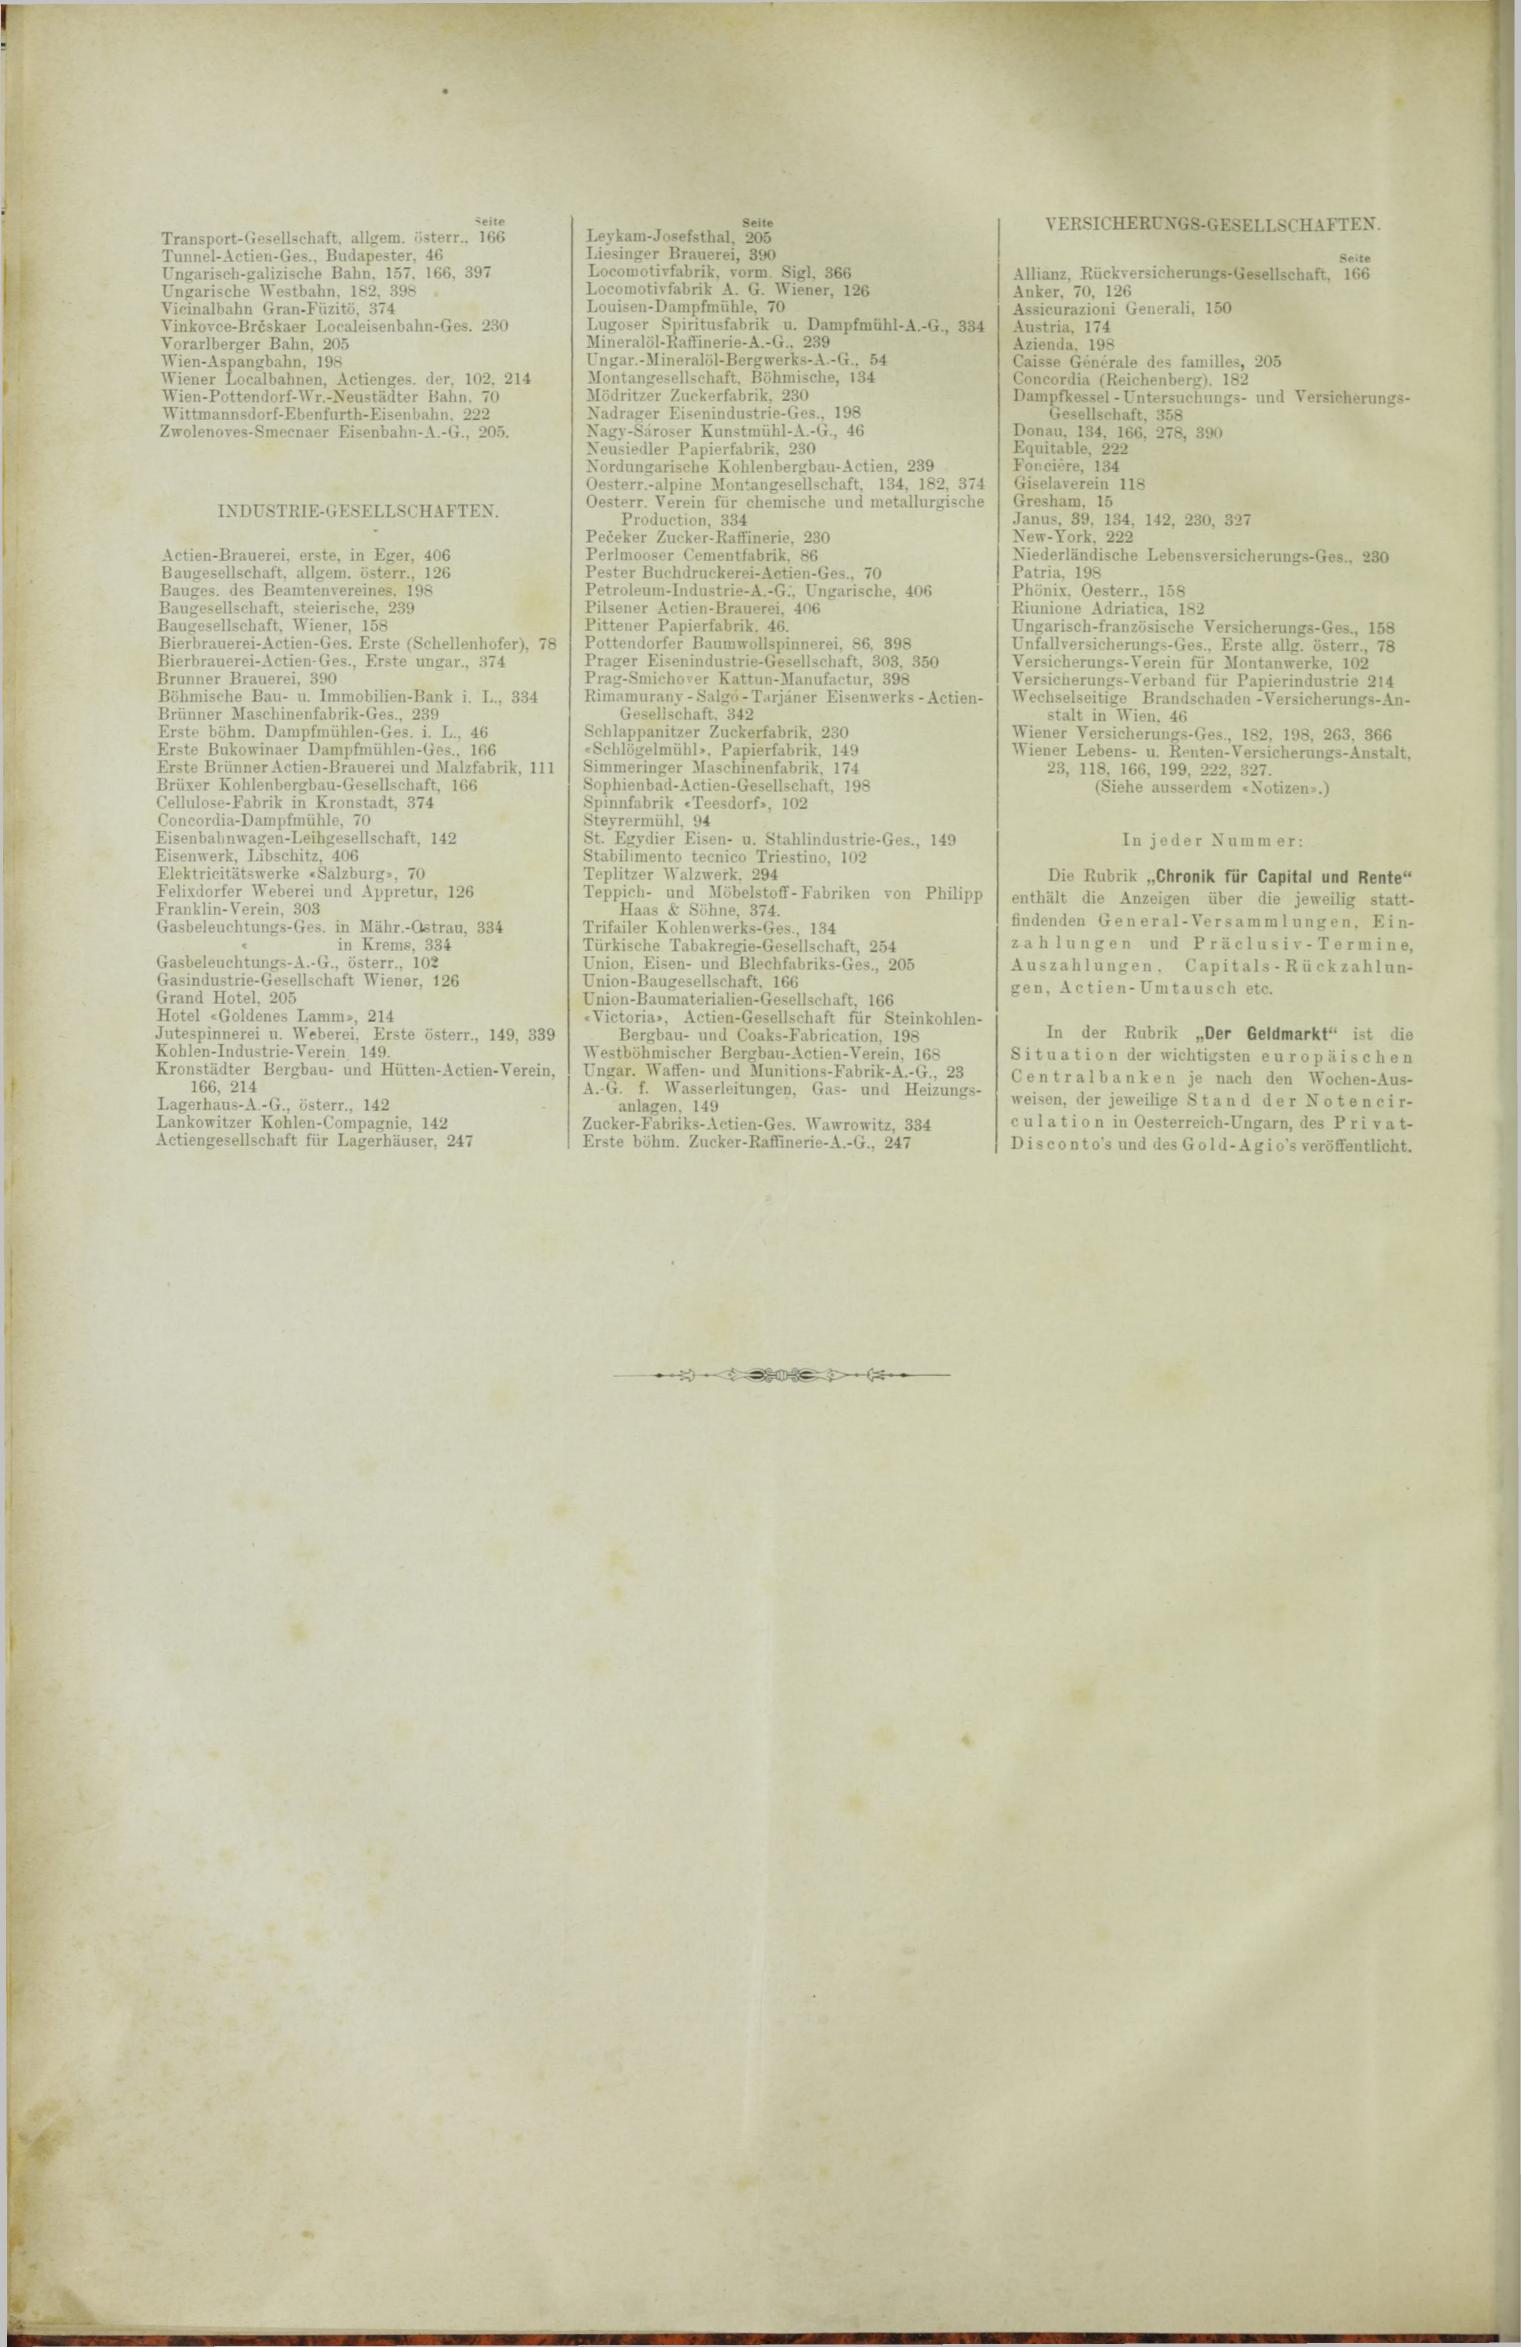 Der Tresor 24.05.1888 - Seite 12